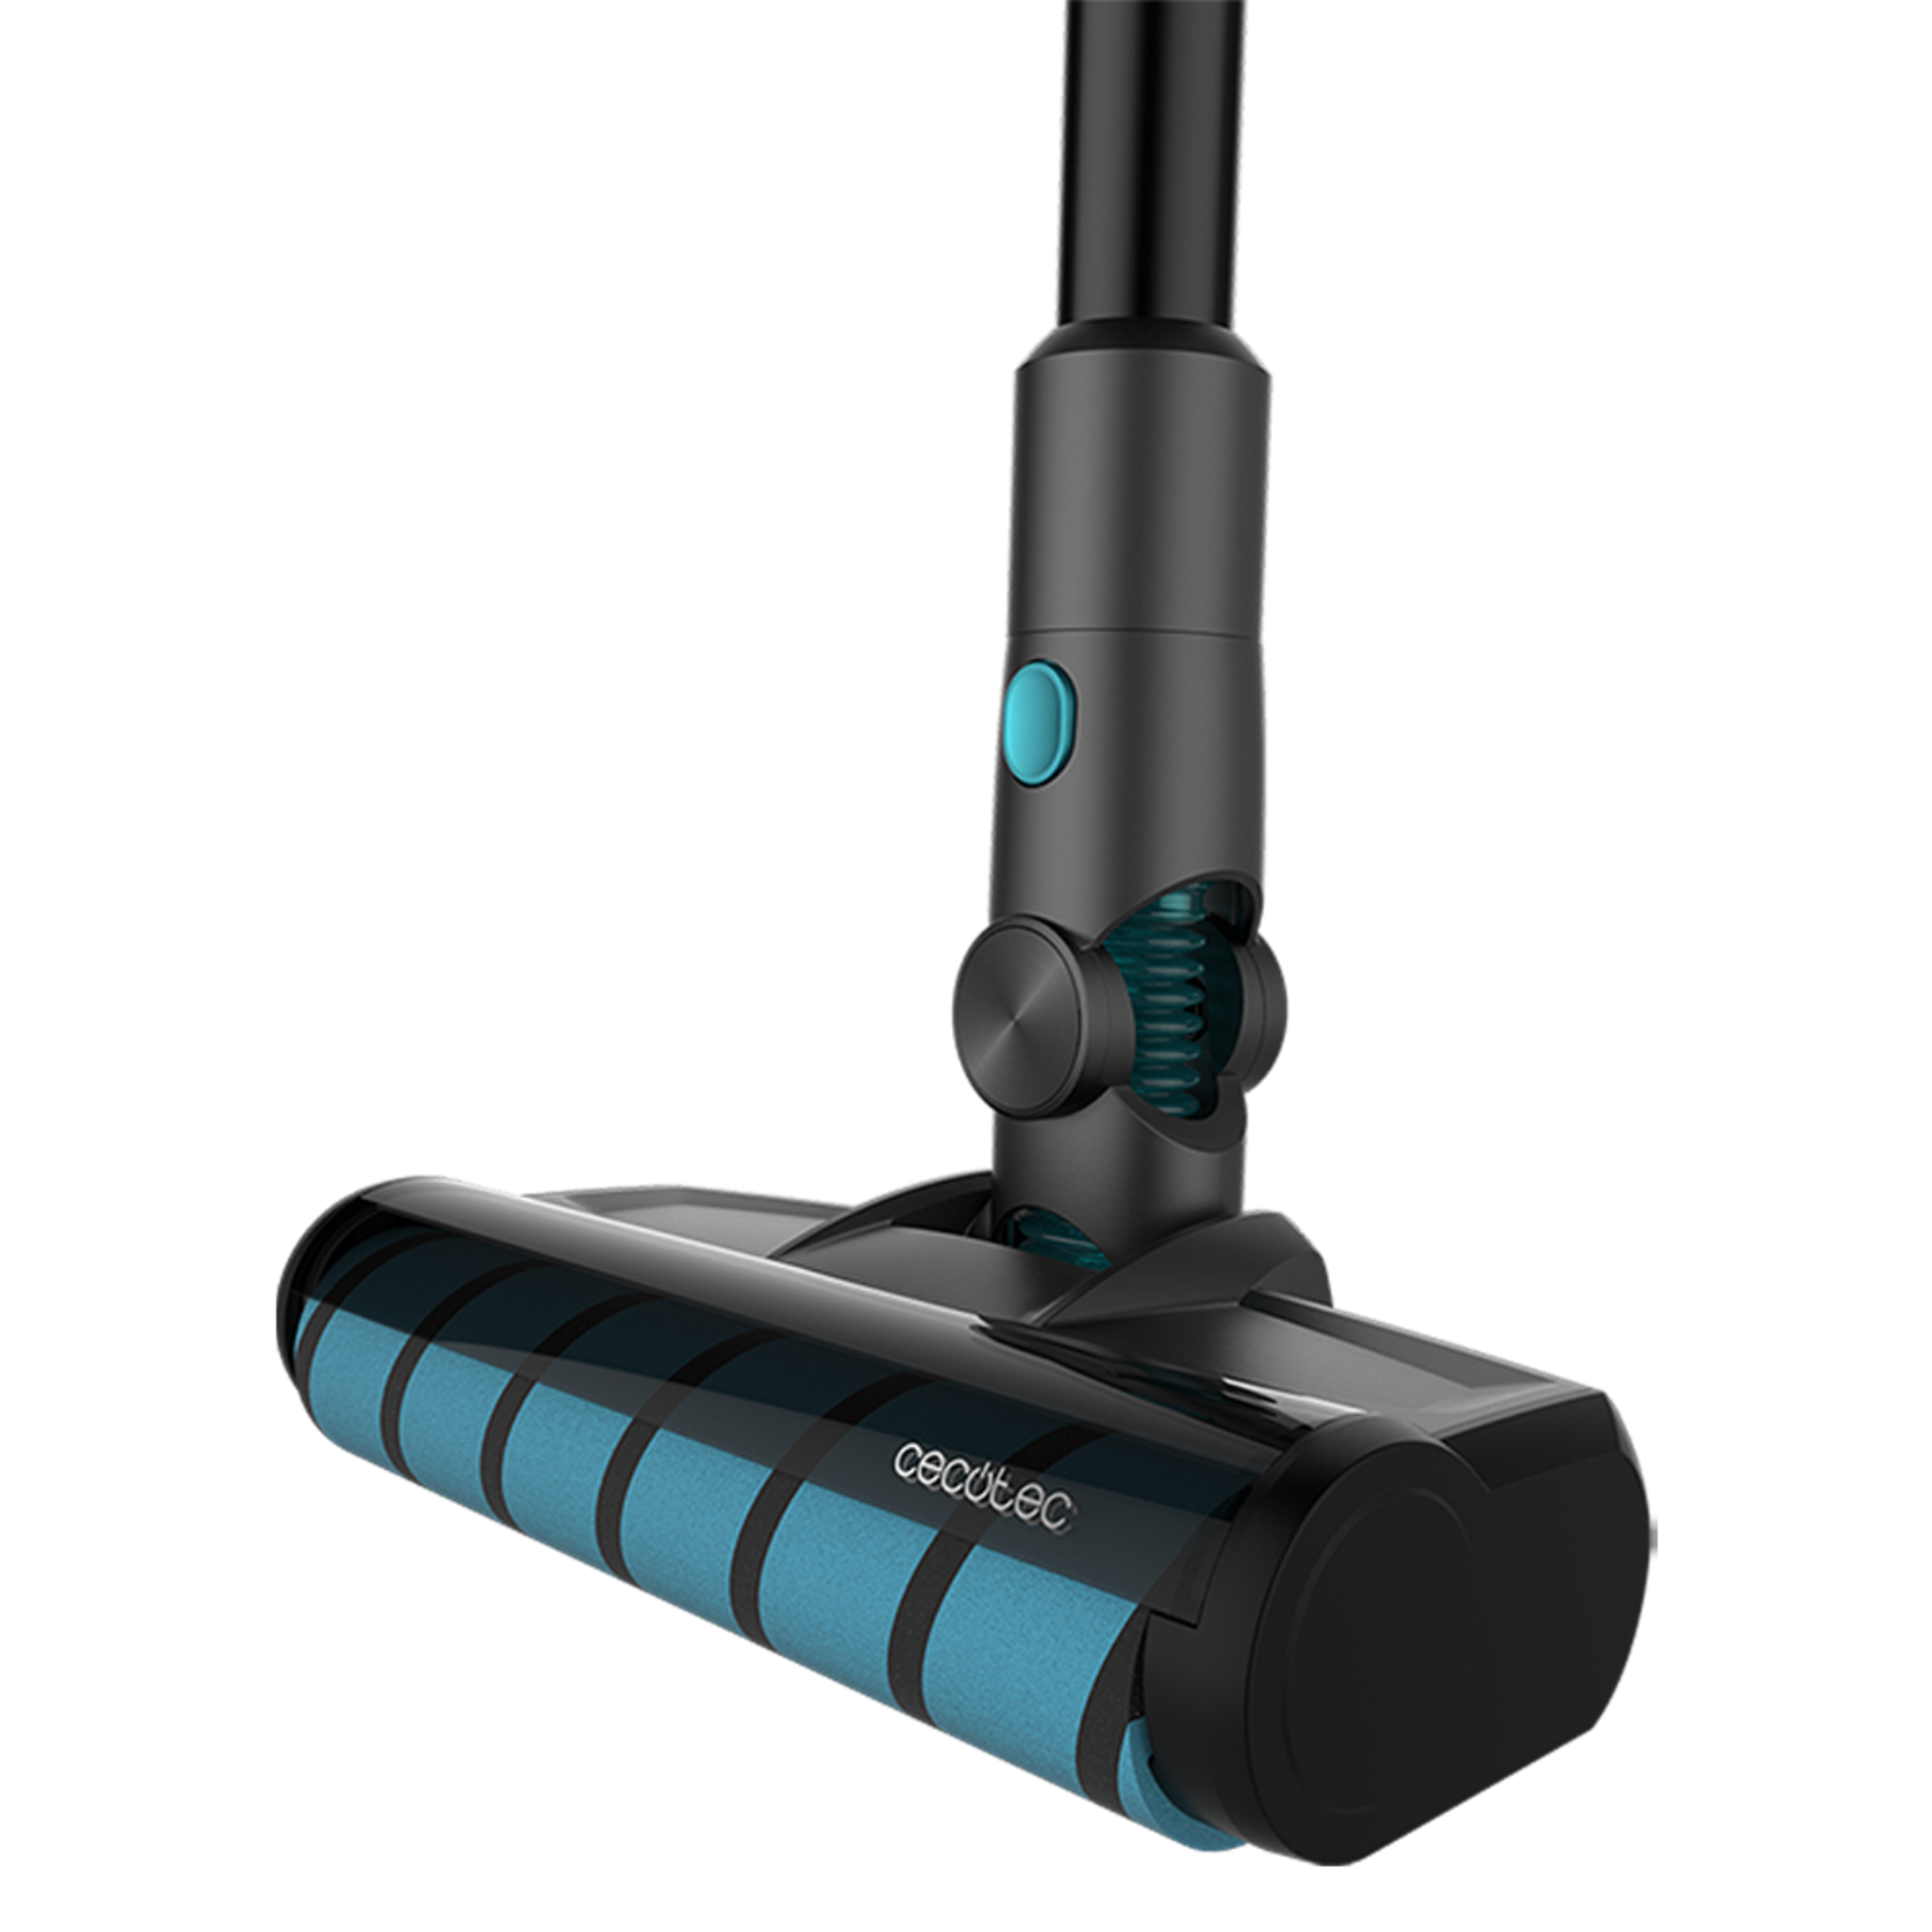 Aspirateur-balai sans fil Conga Rockstar 700 X-Treme. Sans sacs, 430 W de puissance et 24 kPa, 3 en 1 : vertical, balai et à main, avec moteur numérique, mode Auto, tube flexible et jusqu'à 65 minutes d'autonomie.